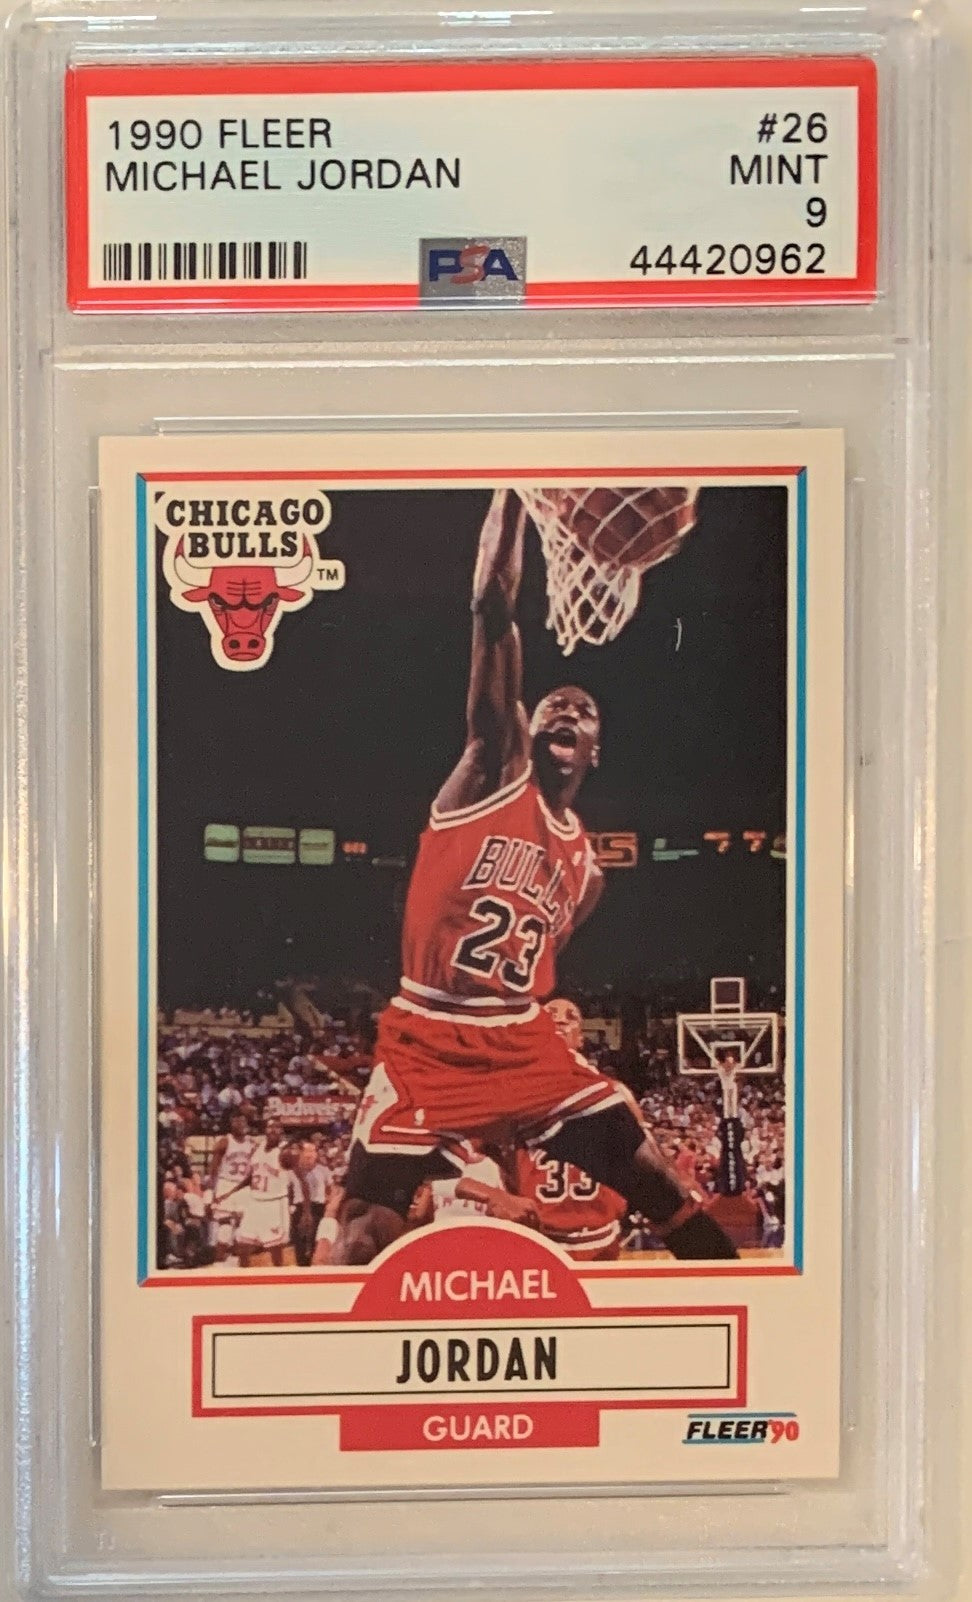 マイケル ジョーダン 1990 フライア バスケットボール カード #26